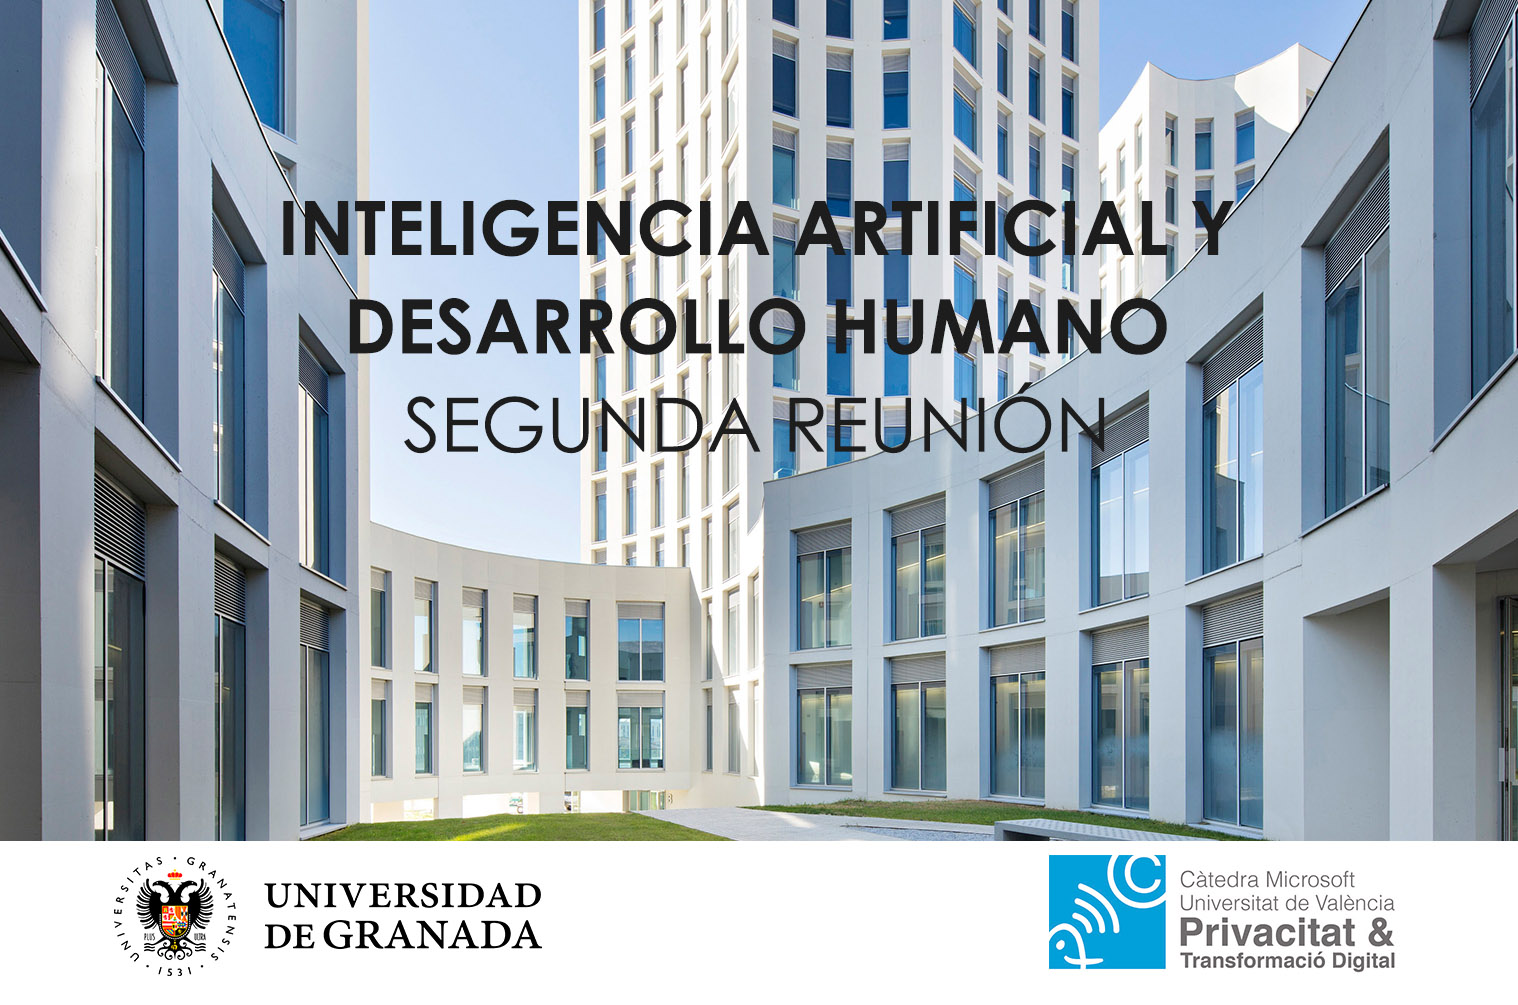 II Reunión de Inteligencia Artificial y Desarrollo Humano de la Cátedra de Privacidad y Transformación Digital Microsoft-Universitat de Valencia en Granada